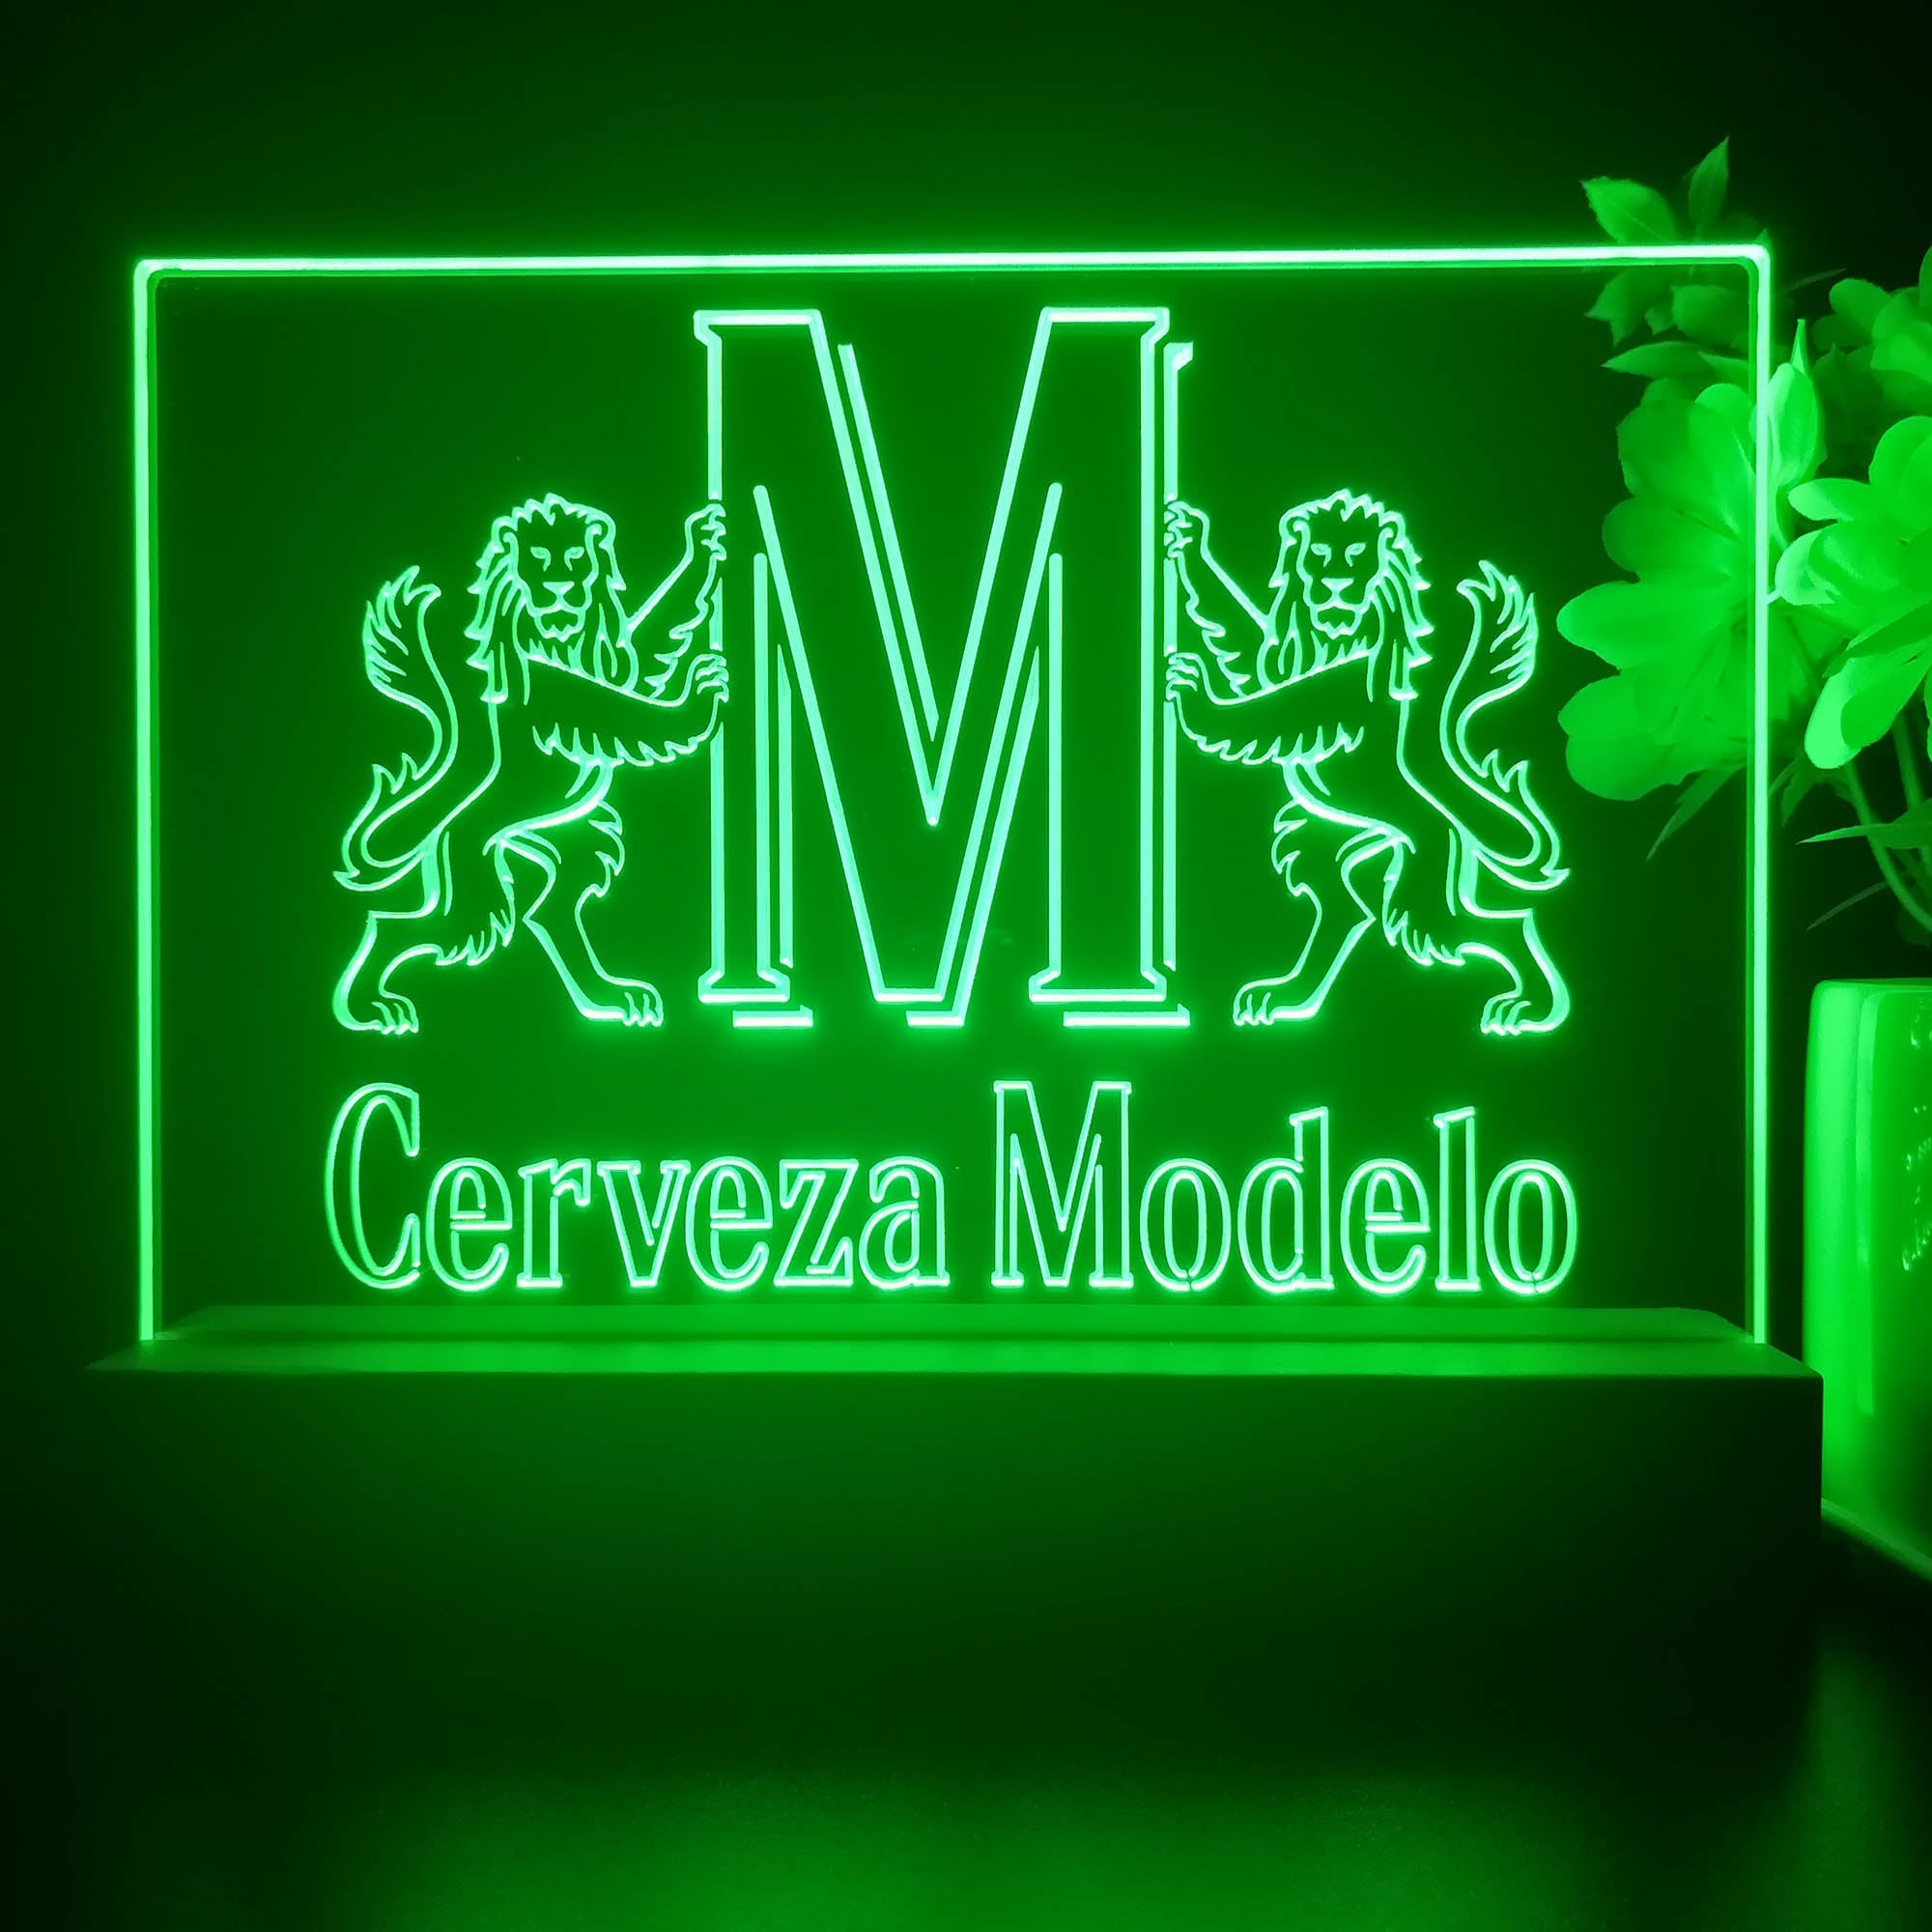 Modelo Especial Neon Sign Pub Bar Decor Lamp